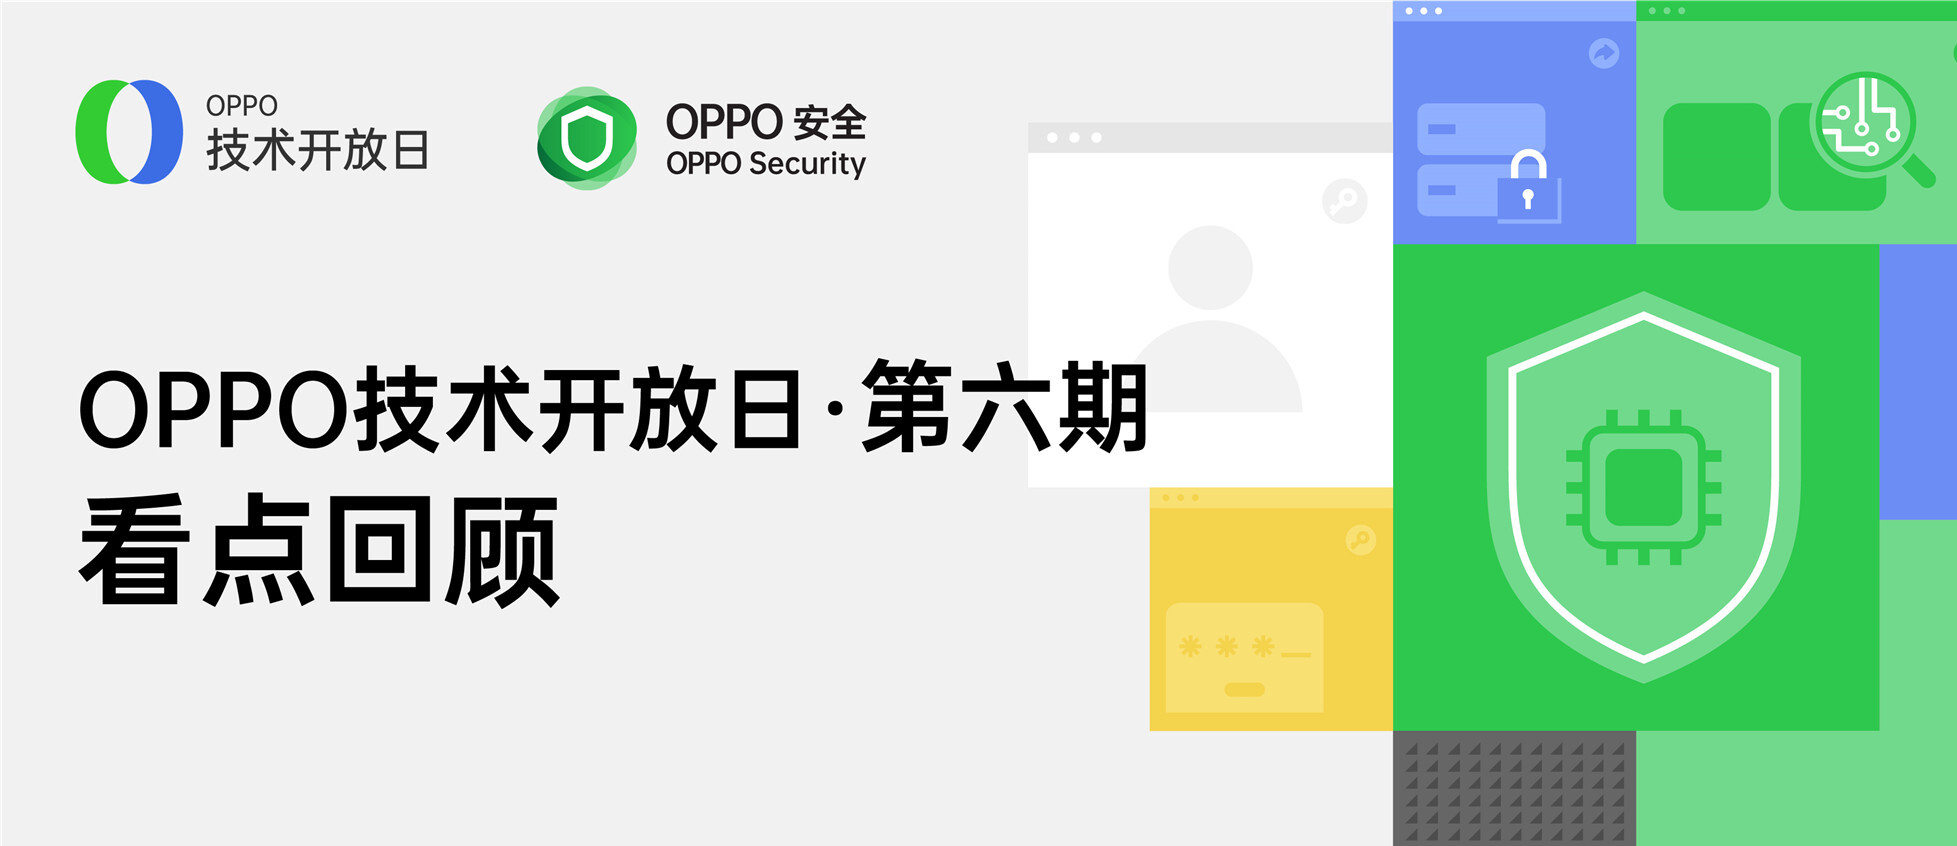 精彩回顾 | 一张图读懂OPPO应用与数据安全防护